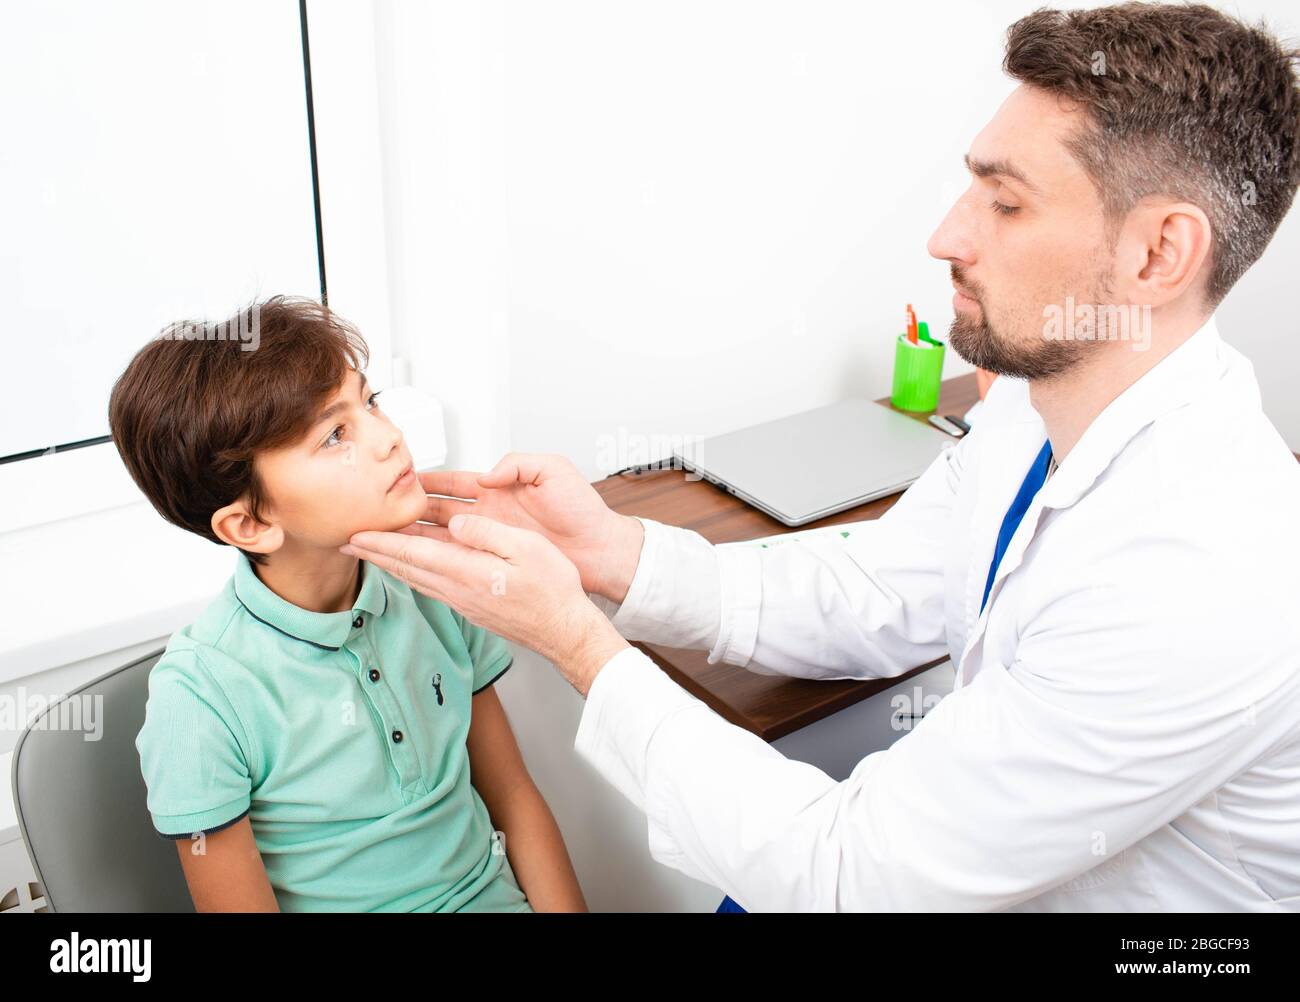 le pédiatre vérifie les ganglions lymphatiques d'un garçon. Amygdalite, inflammation des amygdales, Banque D'Images